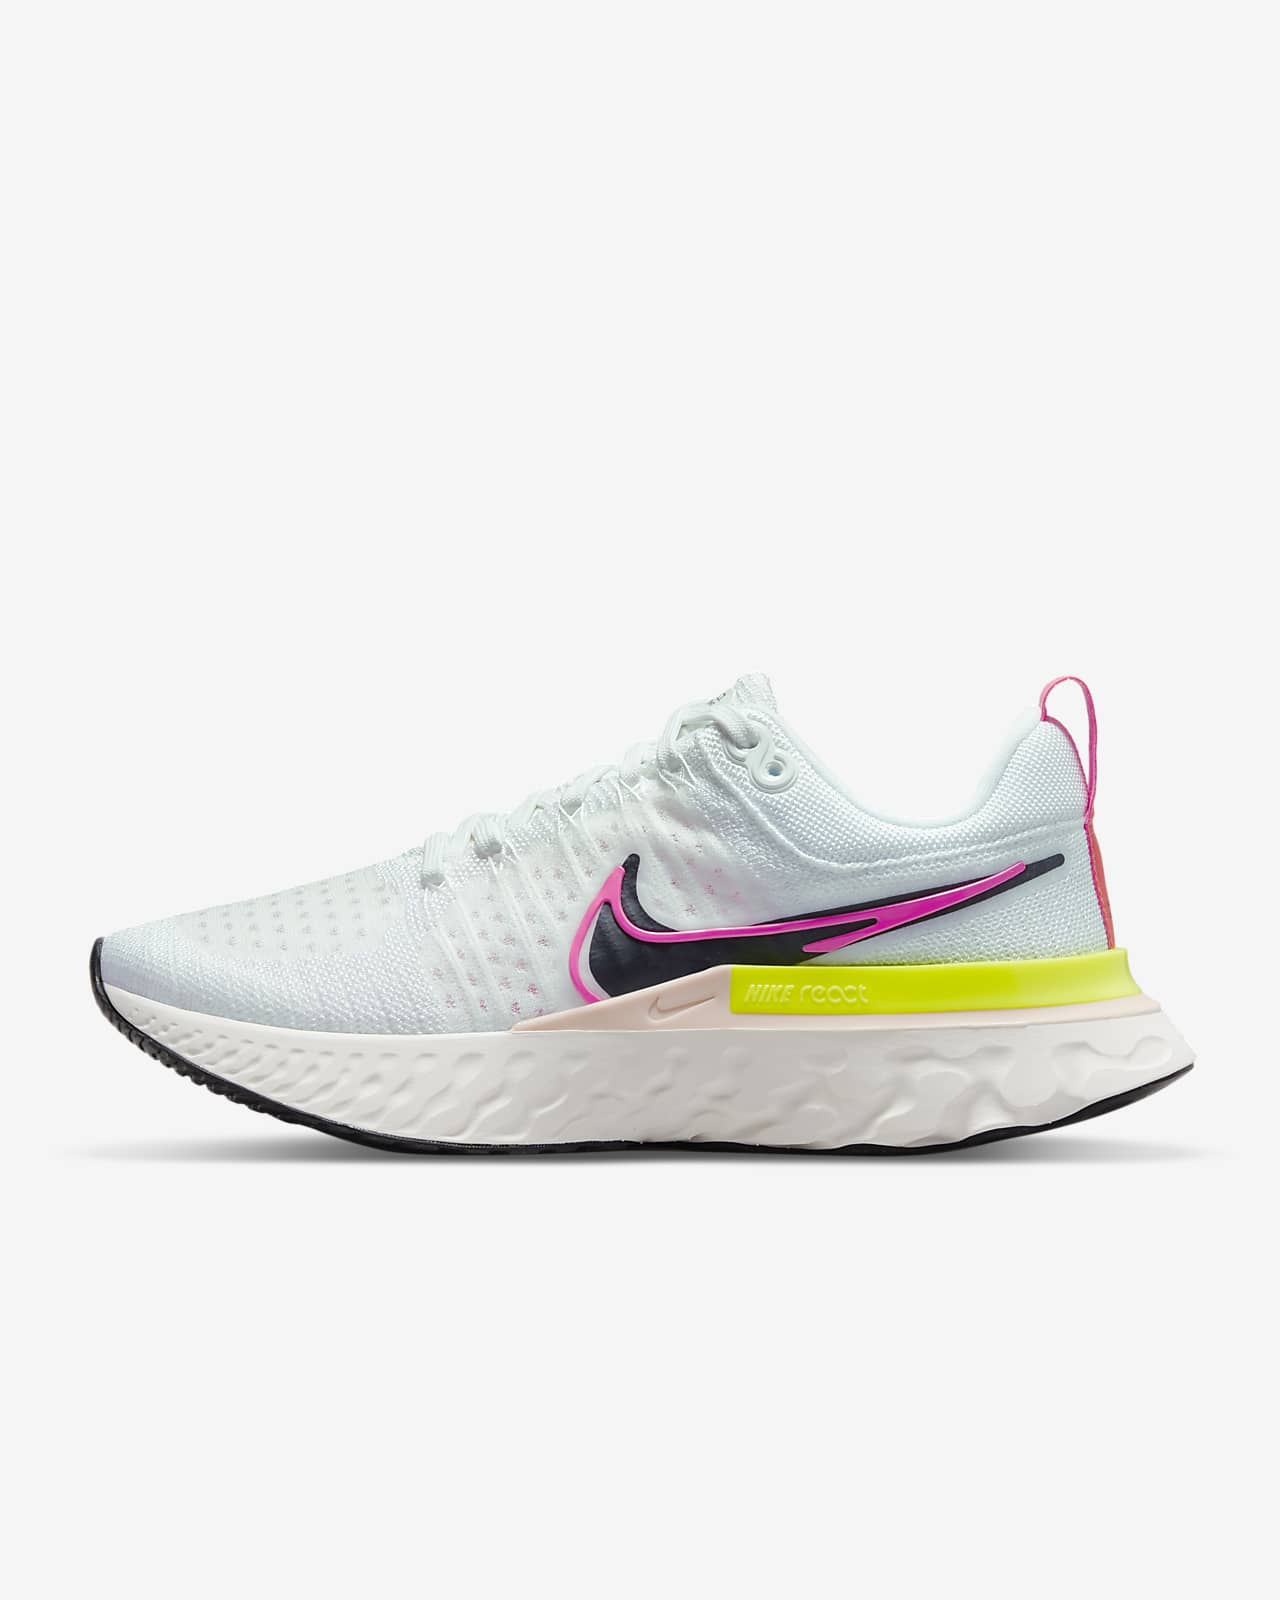 Nike React Infinity Run Flyknit 2 Women's Road Running Shoes